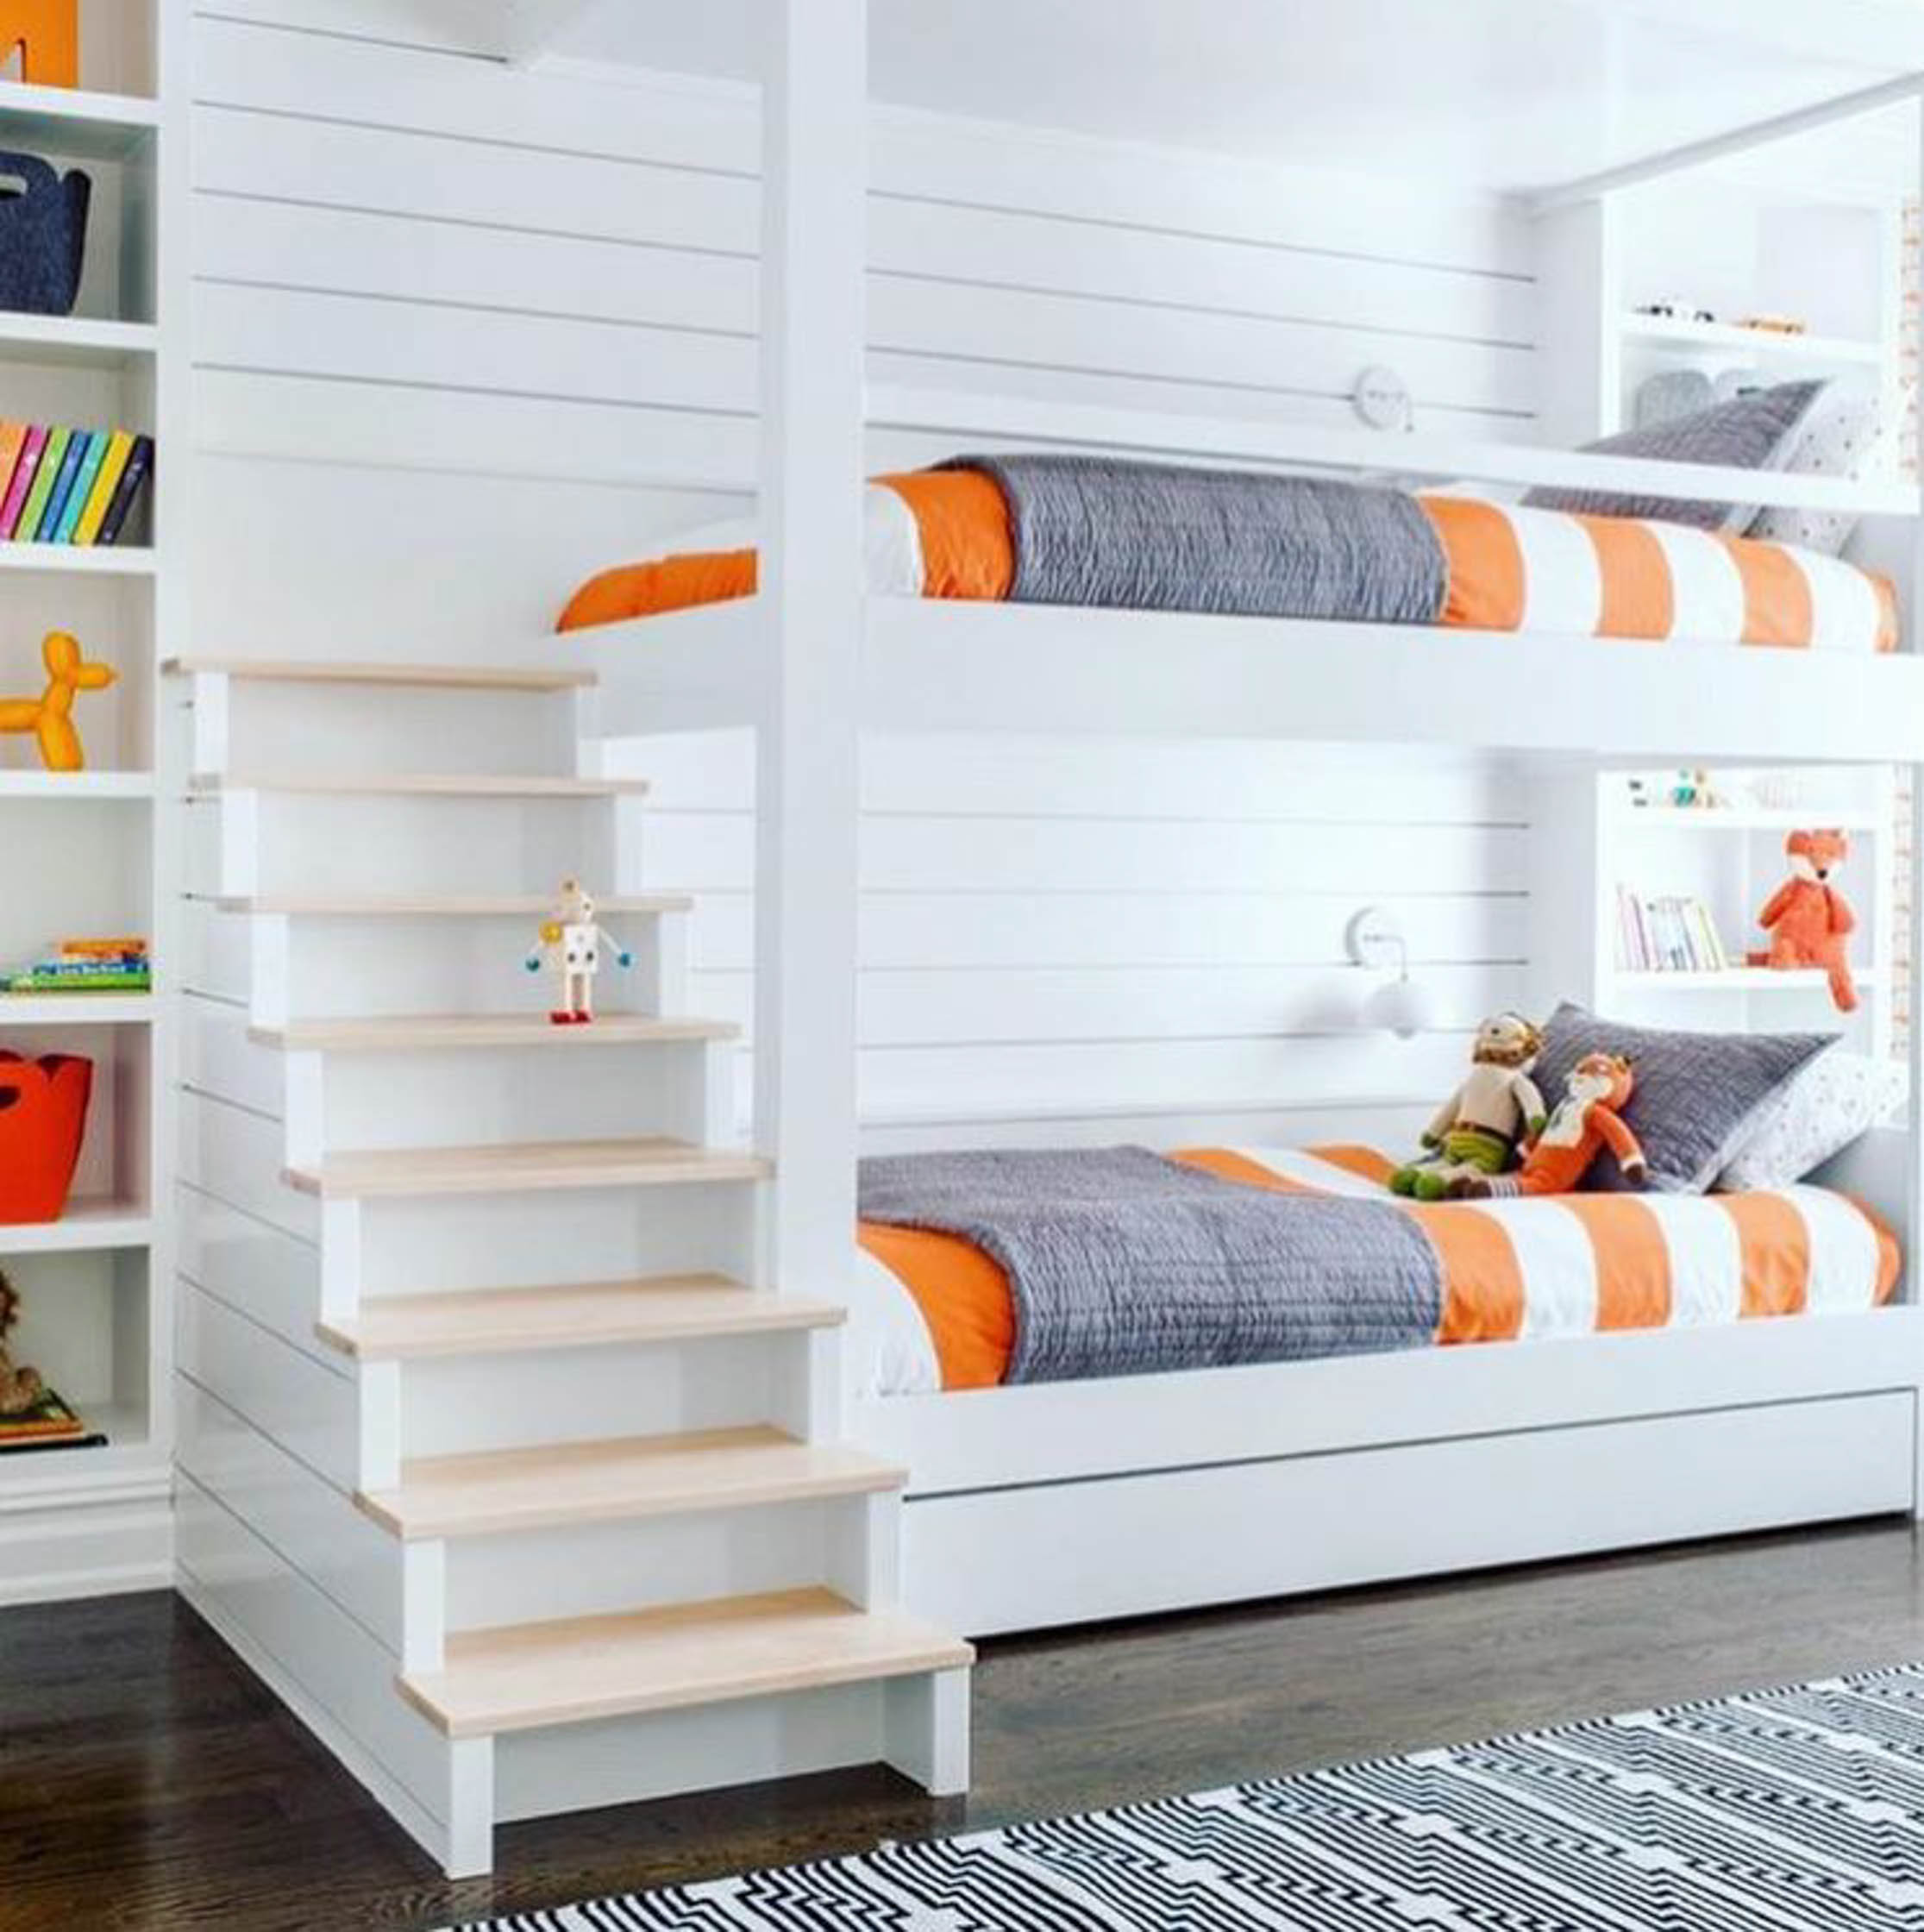 двухъярусная кровать для детей с шкафом для маленькой комнаты